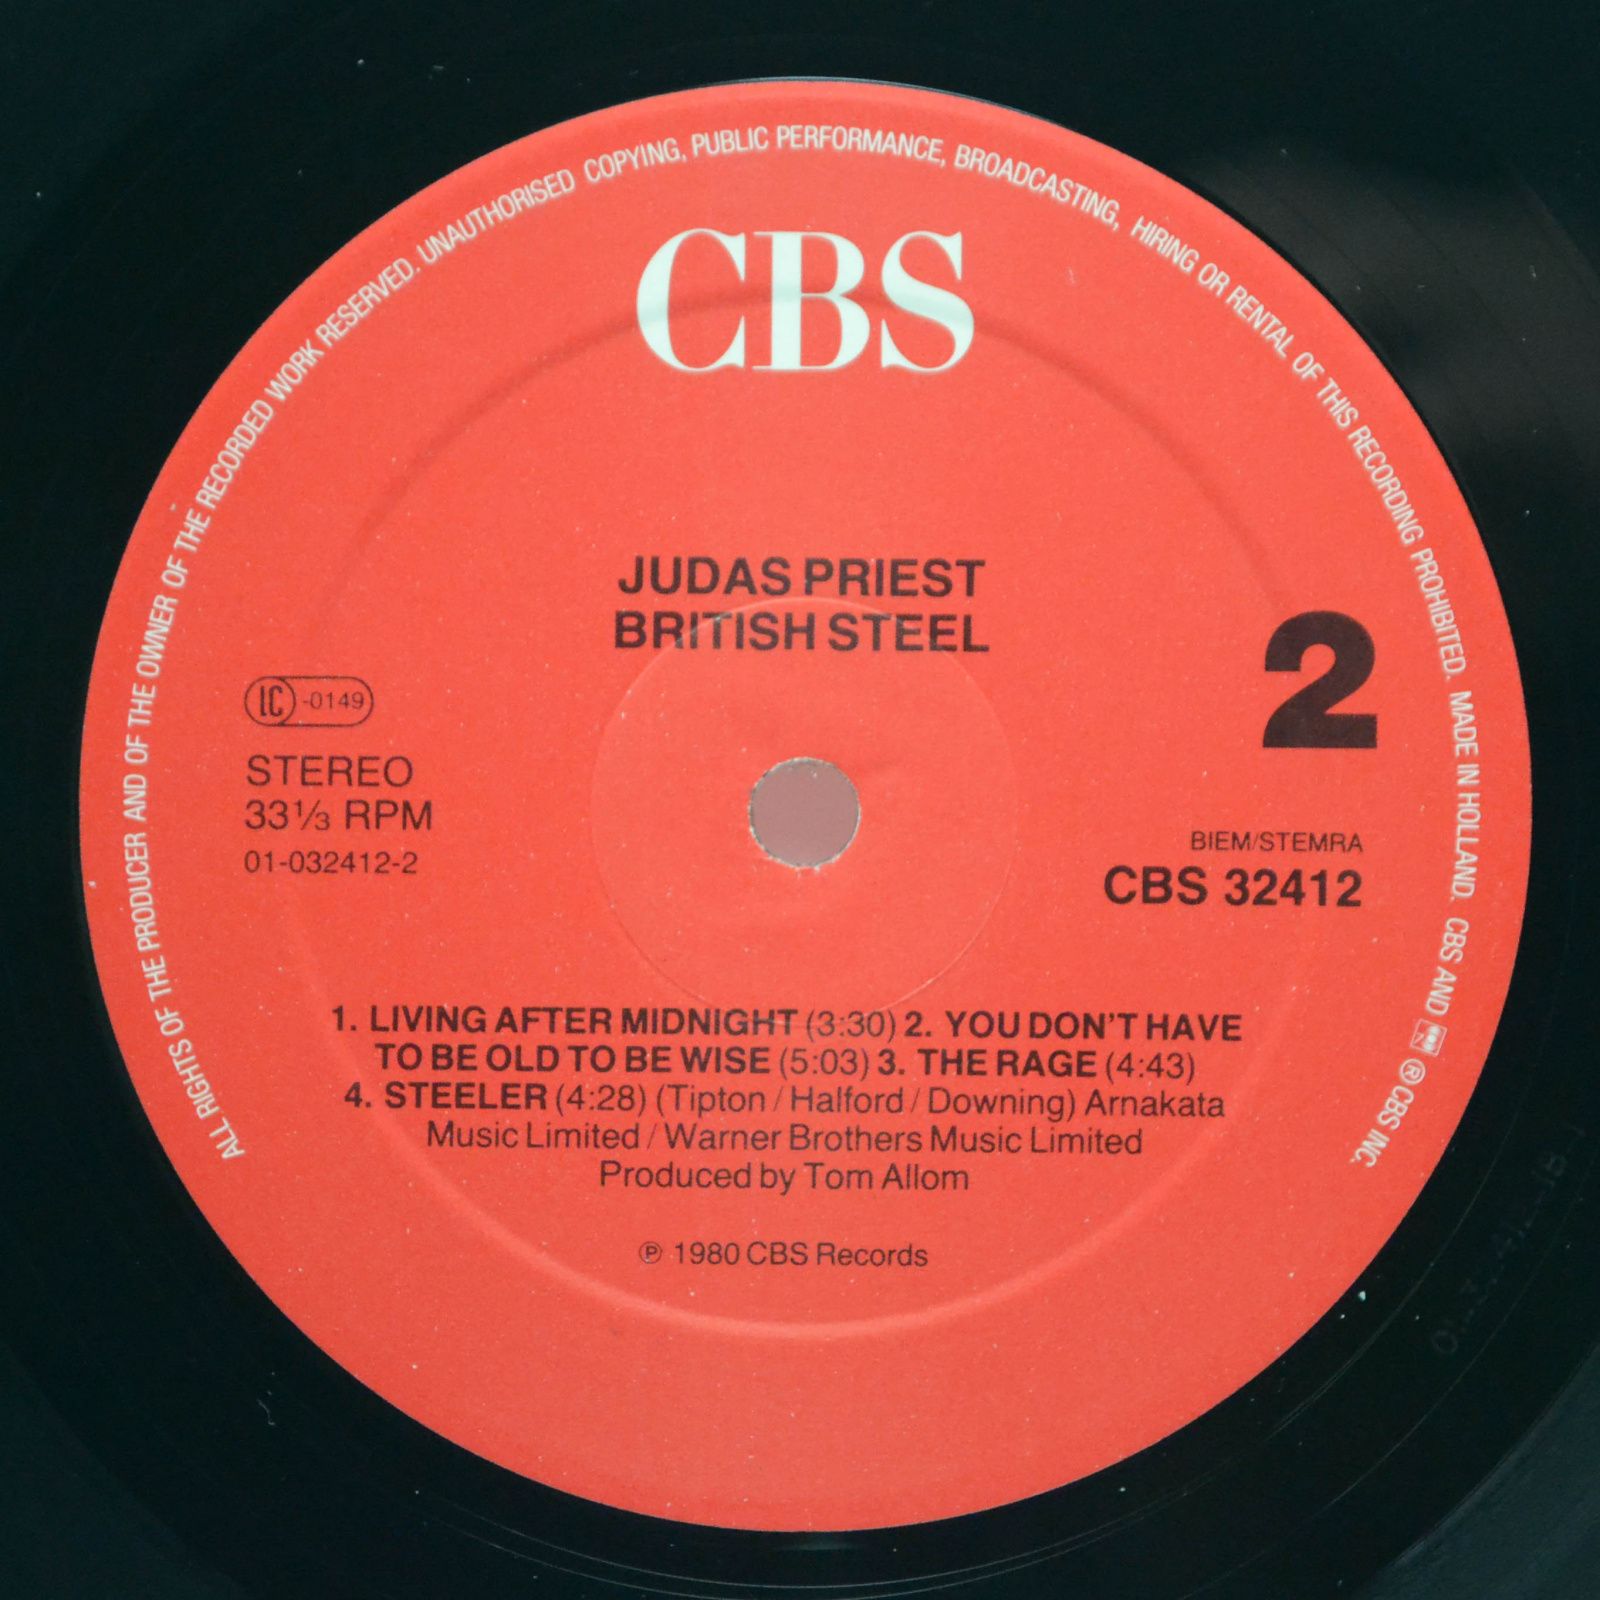 Judas Priest — British Steel, 1980